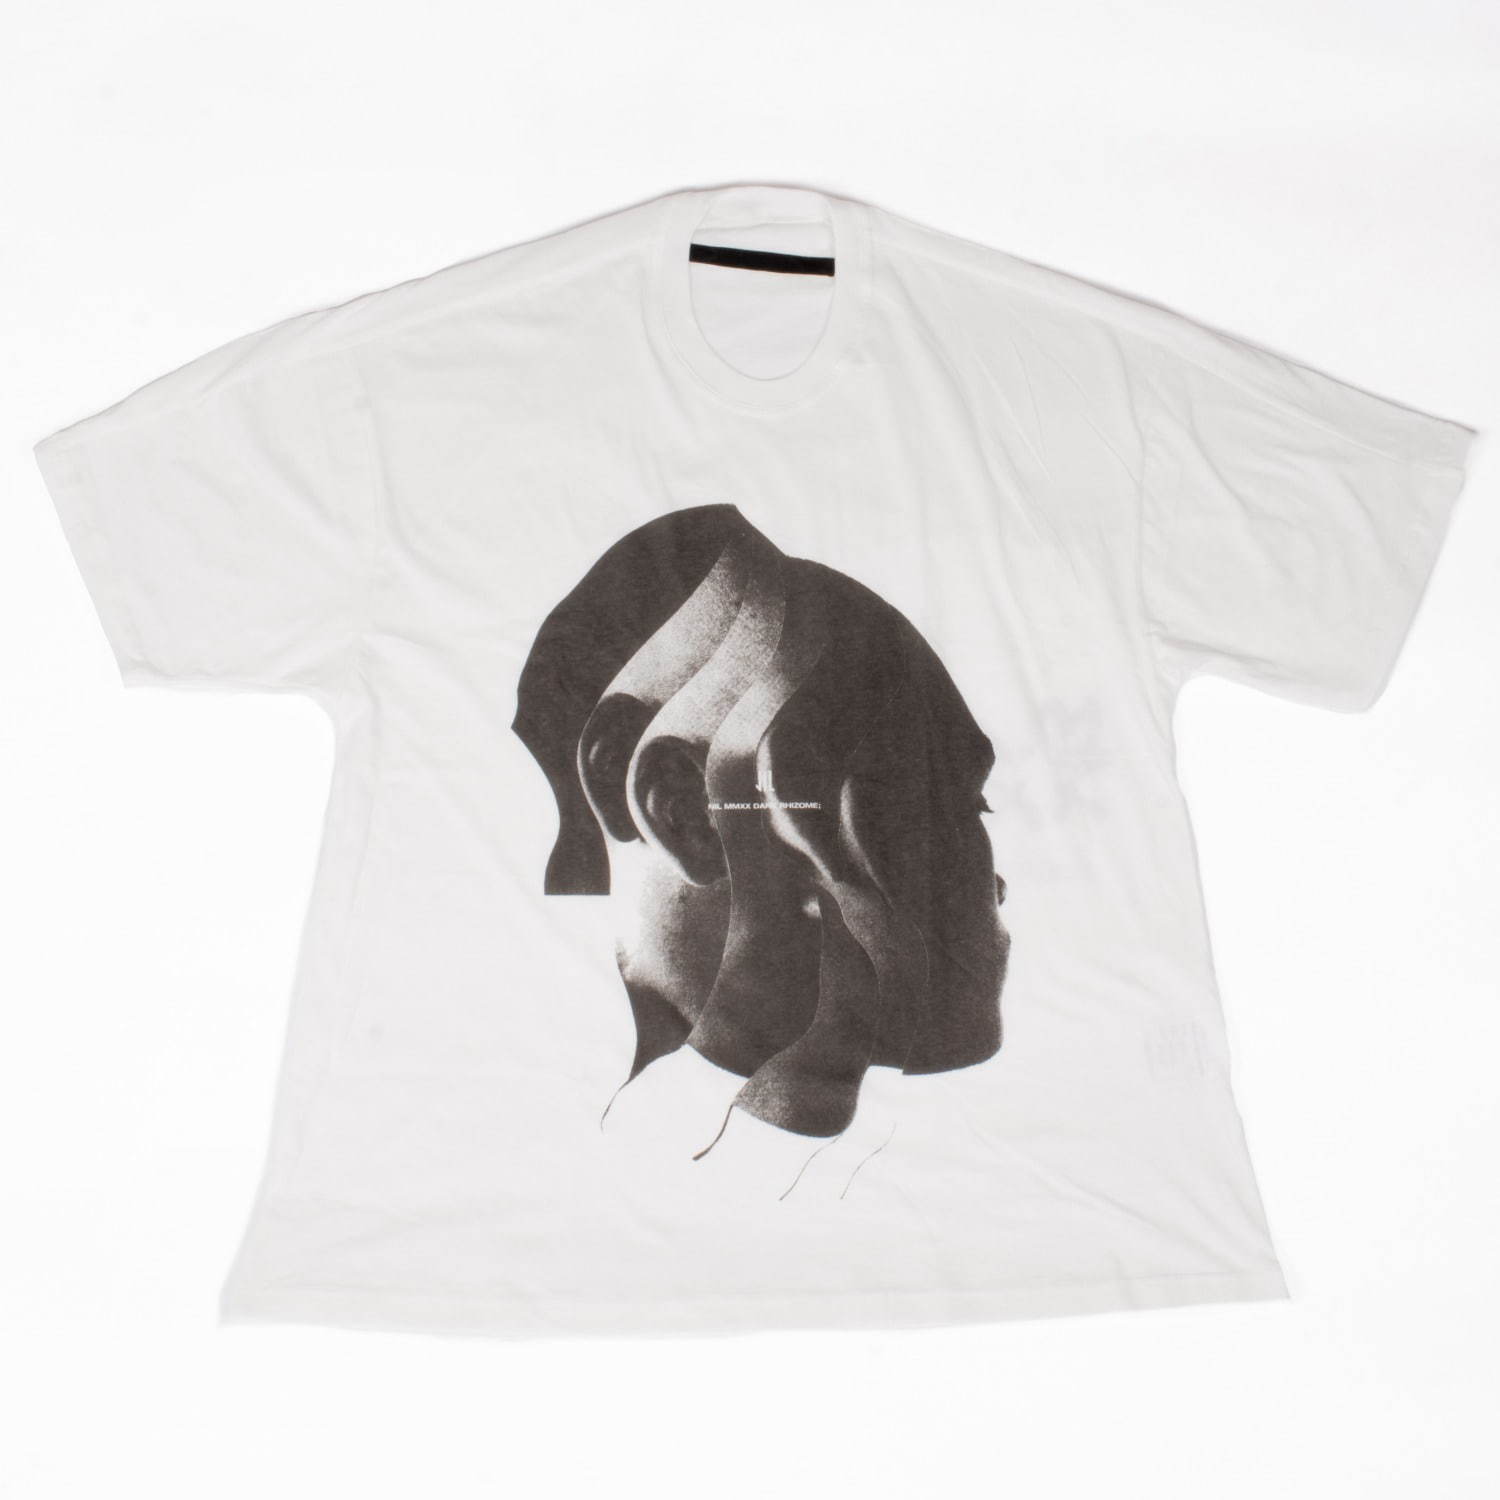 ニルズ×ジェシー・ドラクスラーのTシャツ、コラージュアートのモノクロプリント | 写真